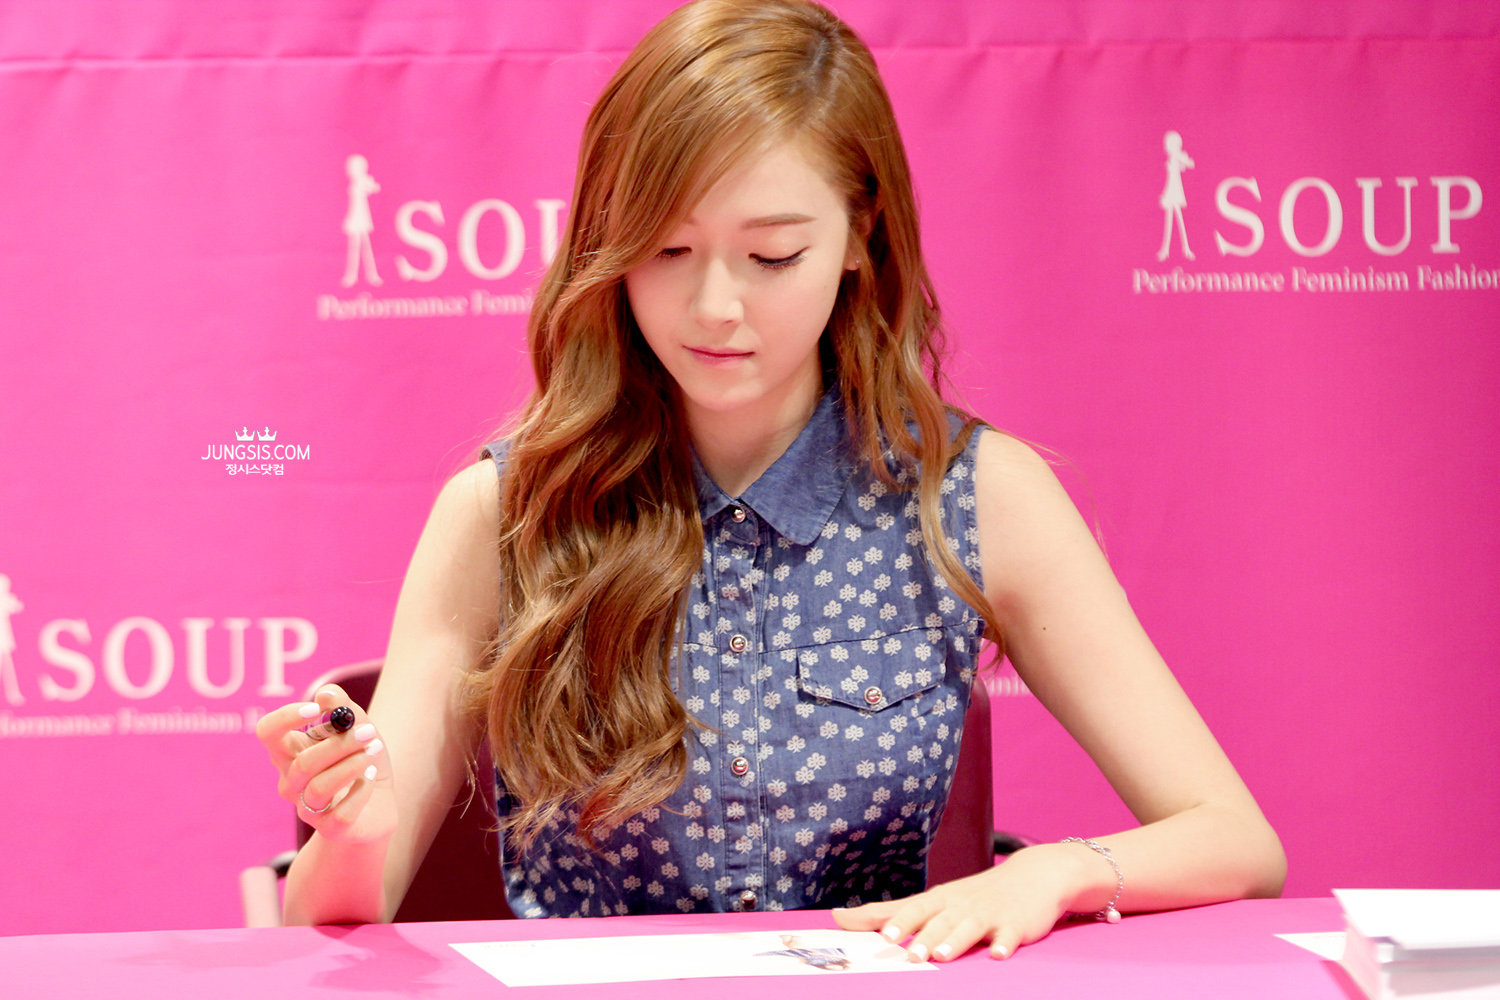 [PIC][04-04-2014]Jessica tham dự buổi fansign cho thương hiệu "SOUP" vào trưa nay - Page 3 270A194153A4493B38A223